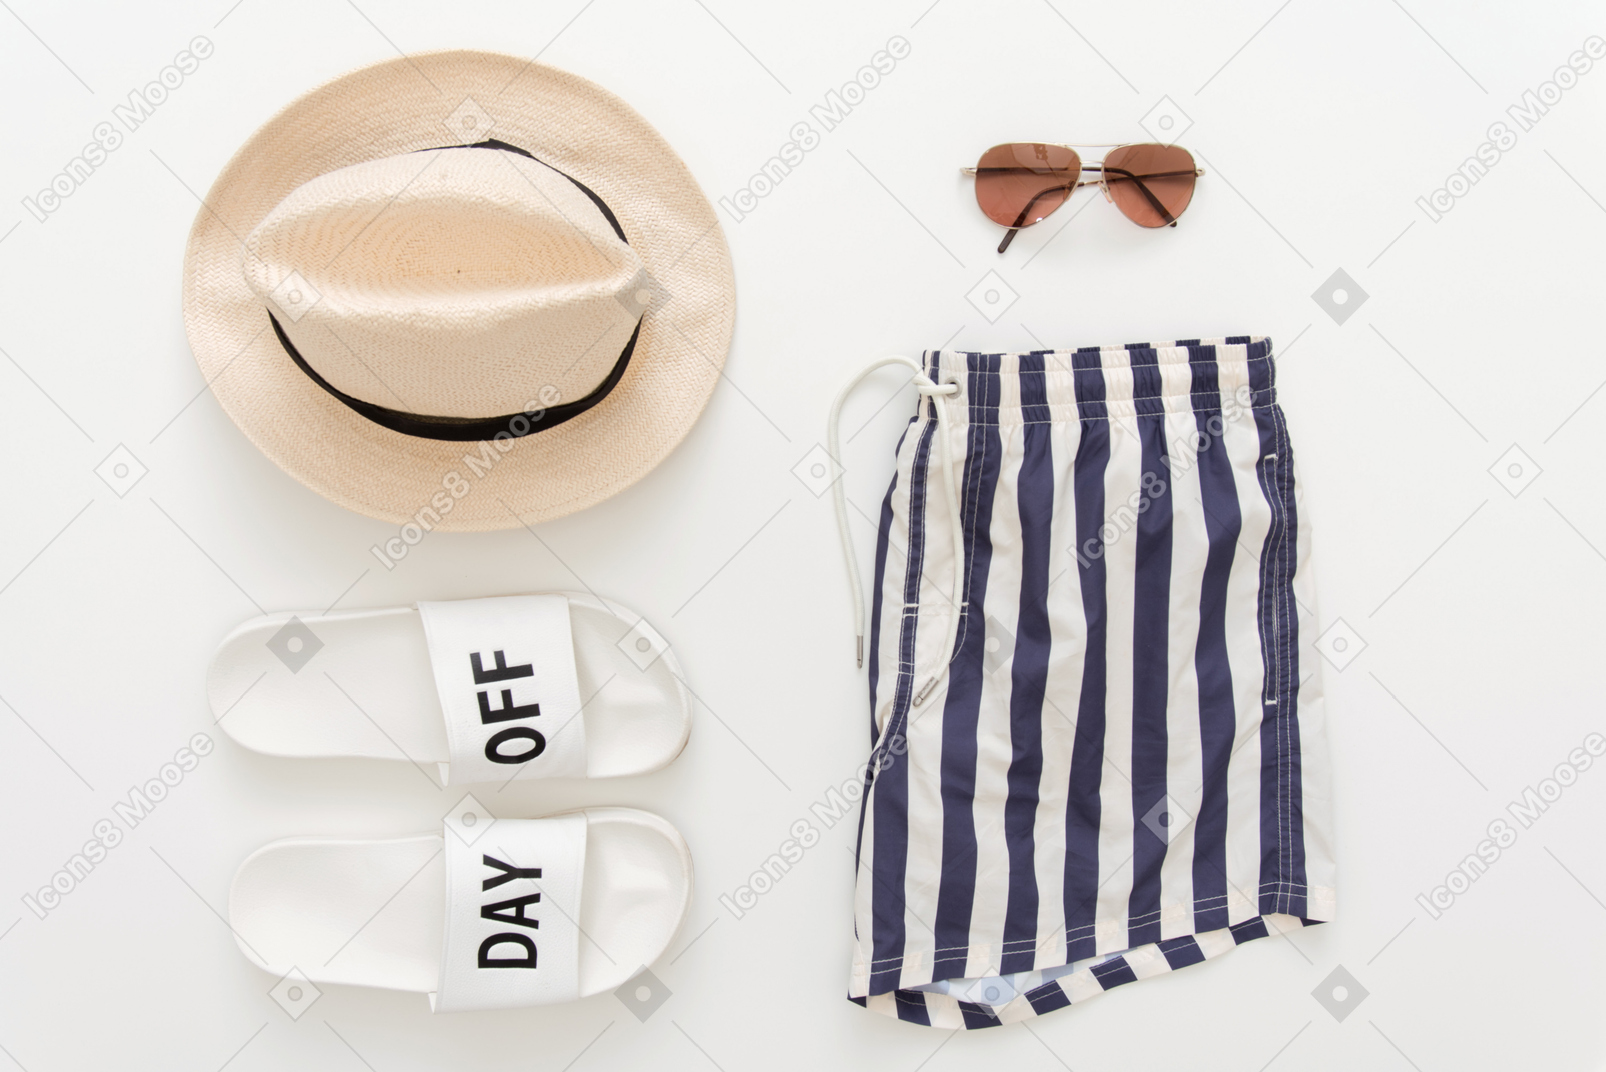 Shorts de bain, chaussons de plage, chapeau et lunettes de soleil